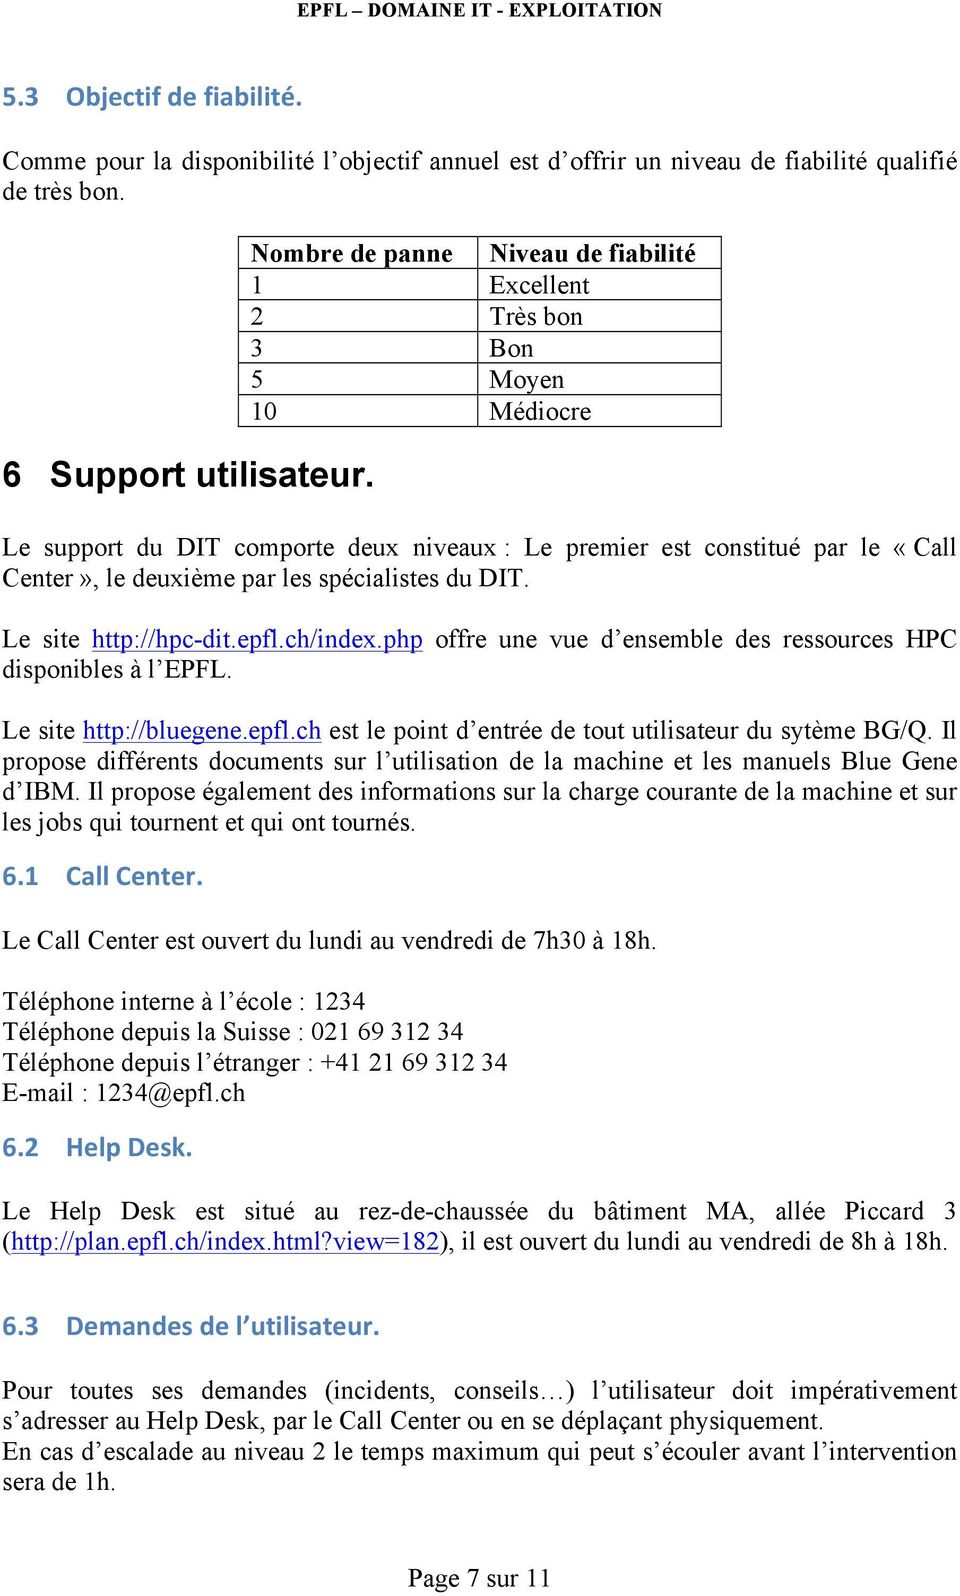 spécialistes du DIT. Le site http://hpc-dit.epfl.ch/index.php offre une vue d ensemble des ressources HPC disponibles à l EPFL. Le site http://bluegene.epfl.ch est le point d entrée de tout utilisateur du sytème BG/Q.